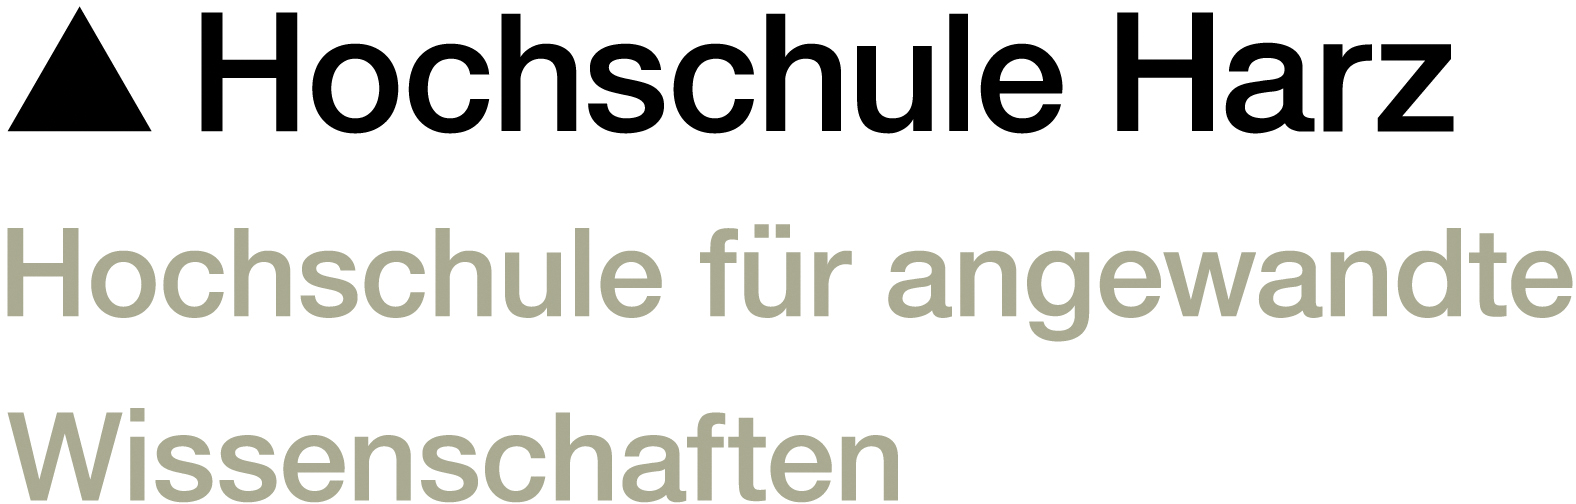 Logo: Hochschule Harz, Hochschule für angewandte Wissenschaften (FH)